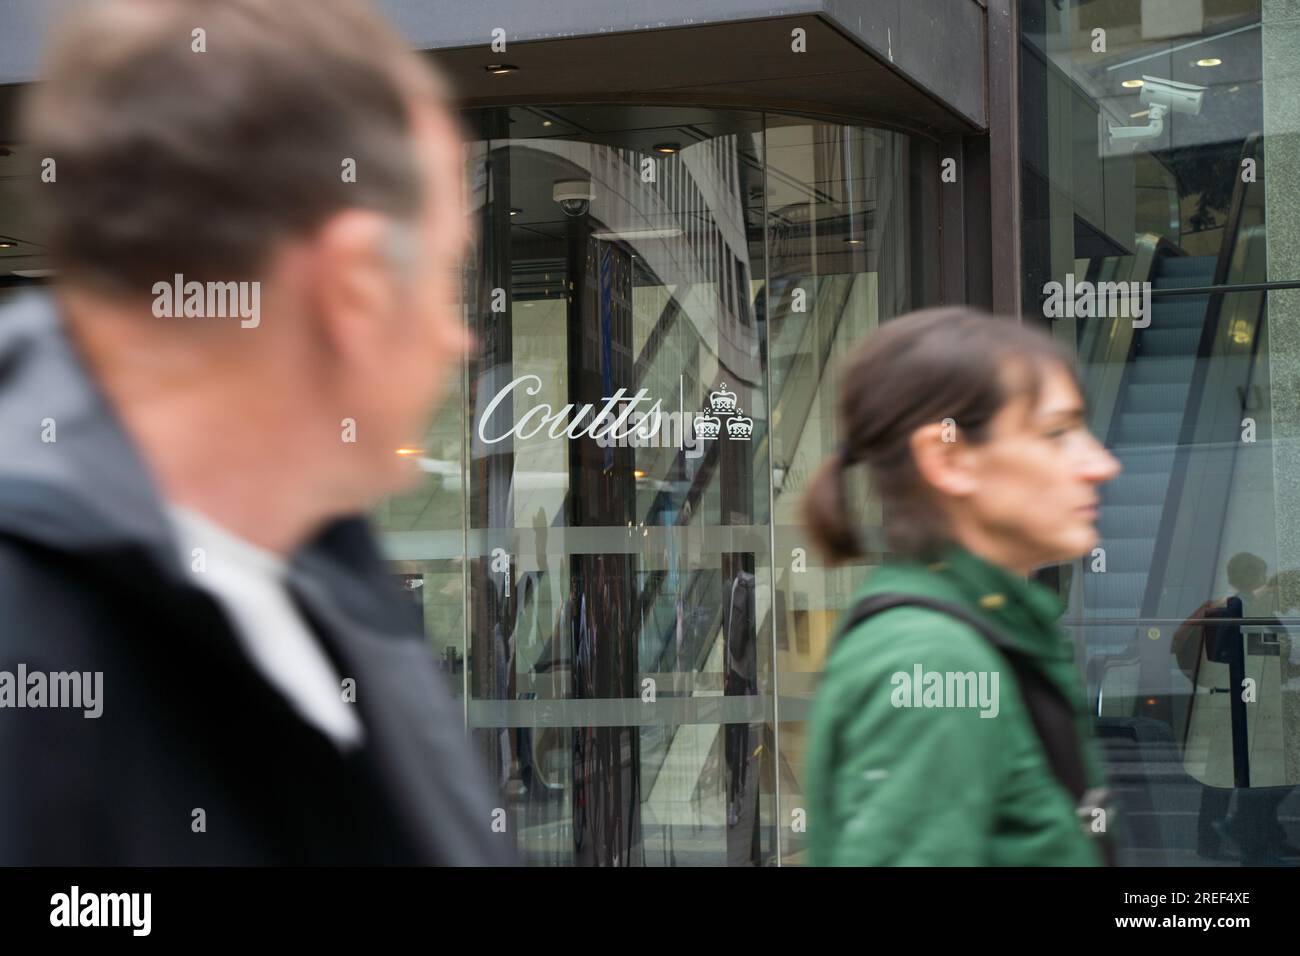 Coutts firma en la puerta de vidrio de entrada al banco privado Coutts en Strand London England Foto de stock